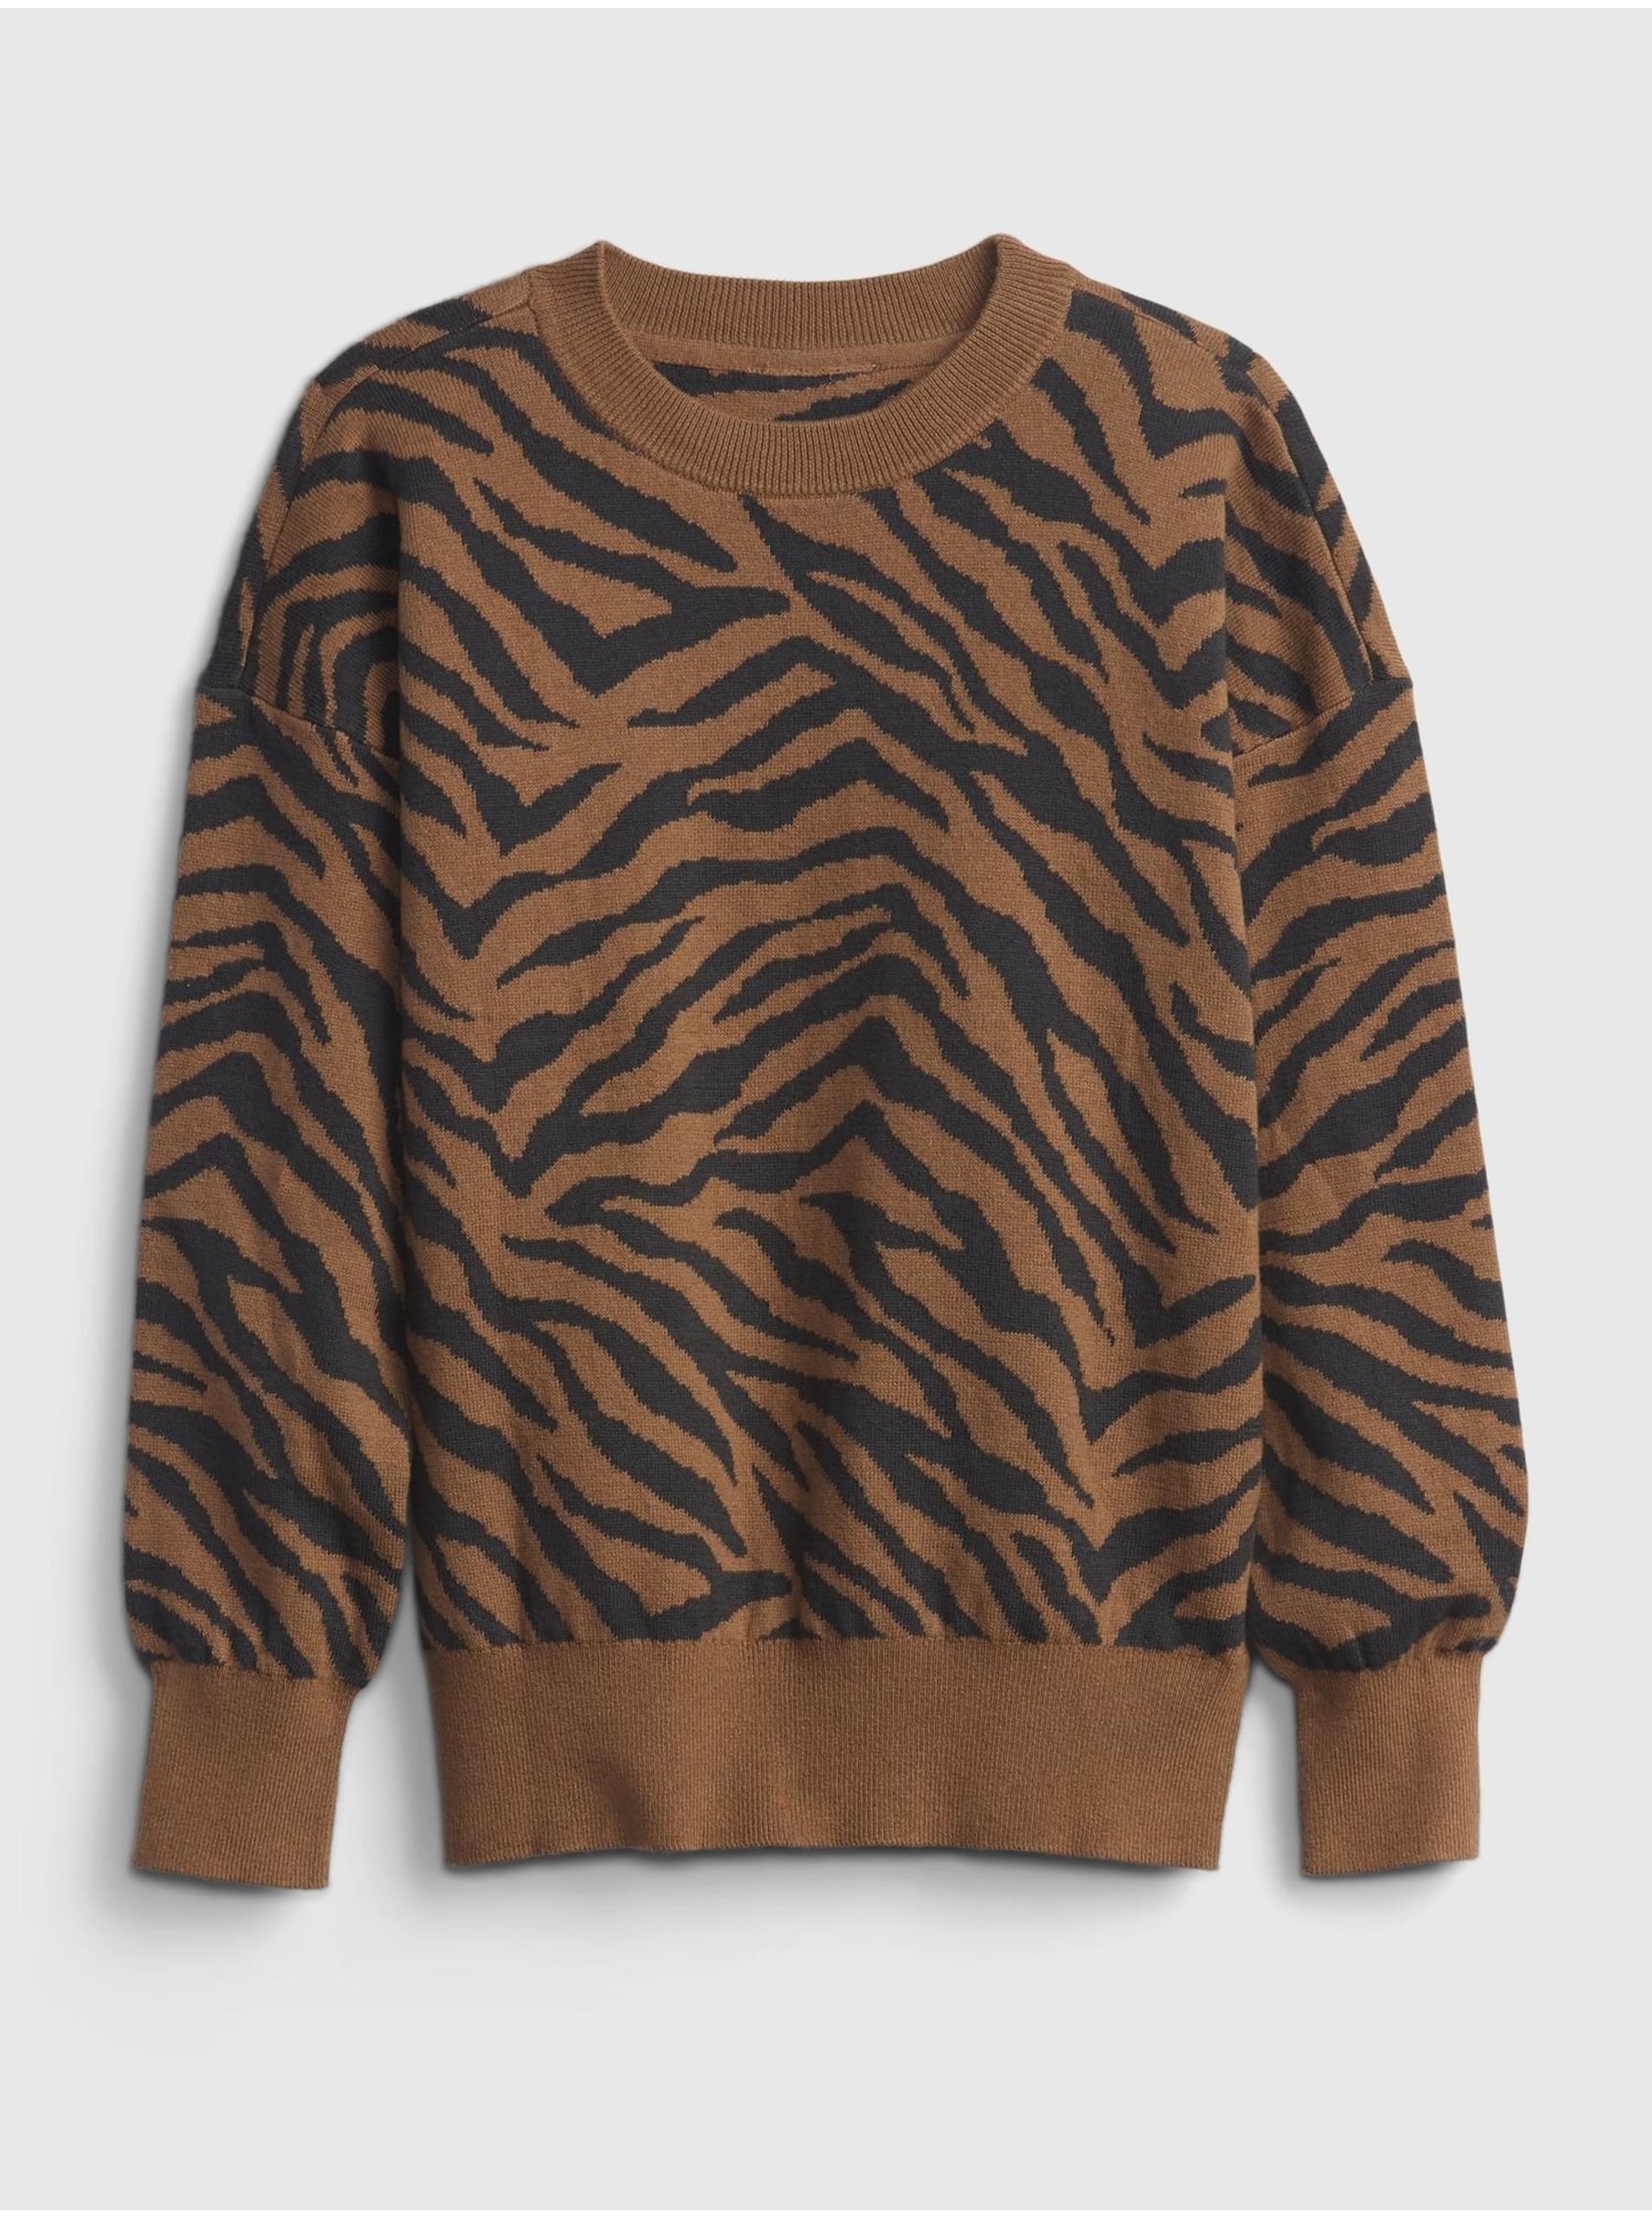 E-shop Barevný holčičí svetr novelty slouchy pullover